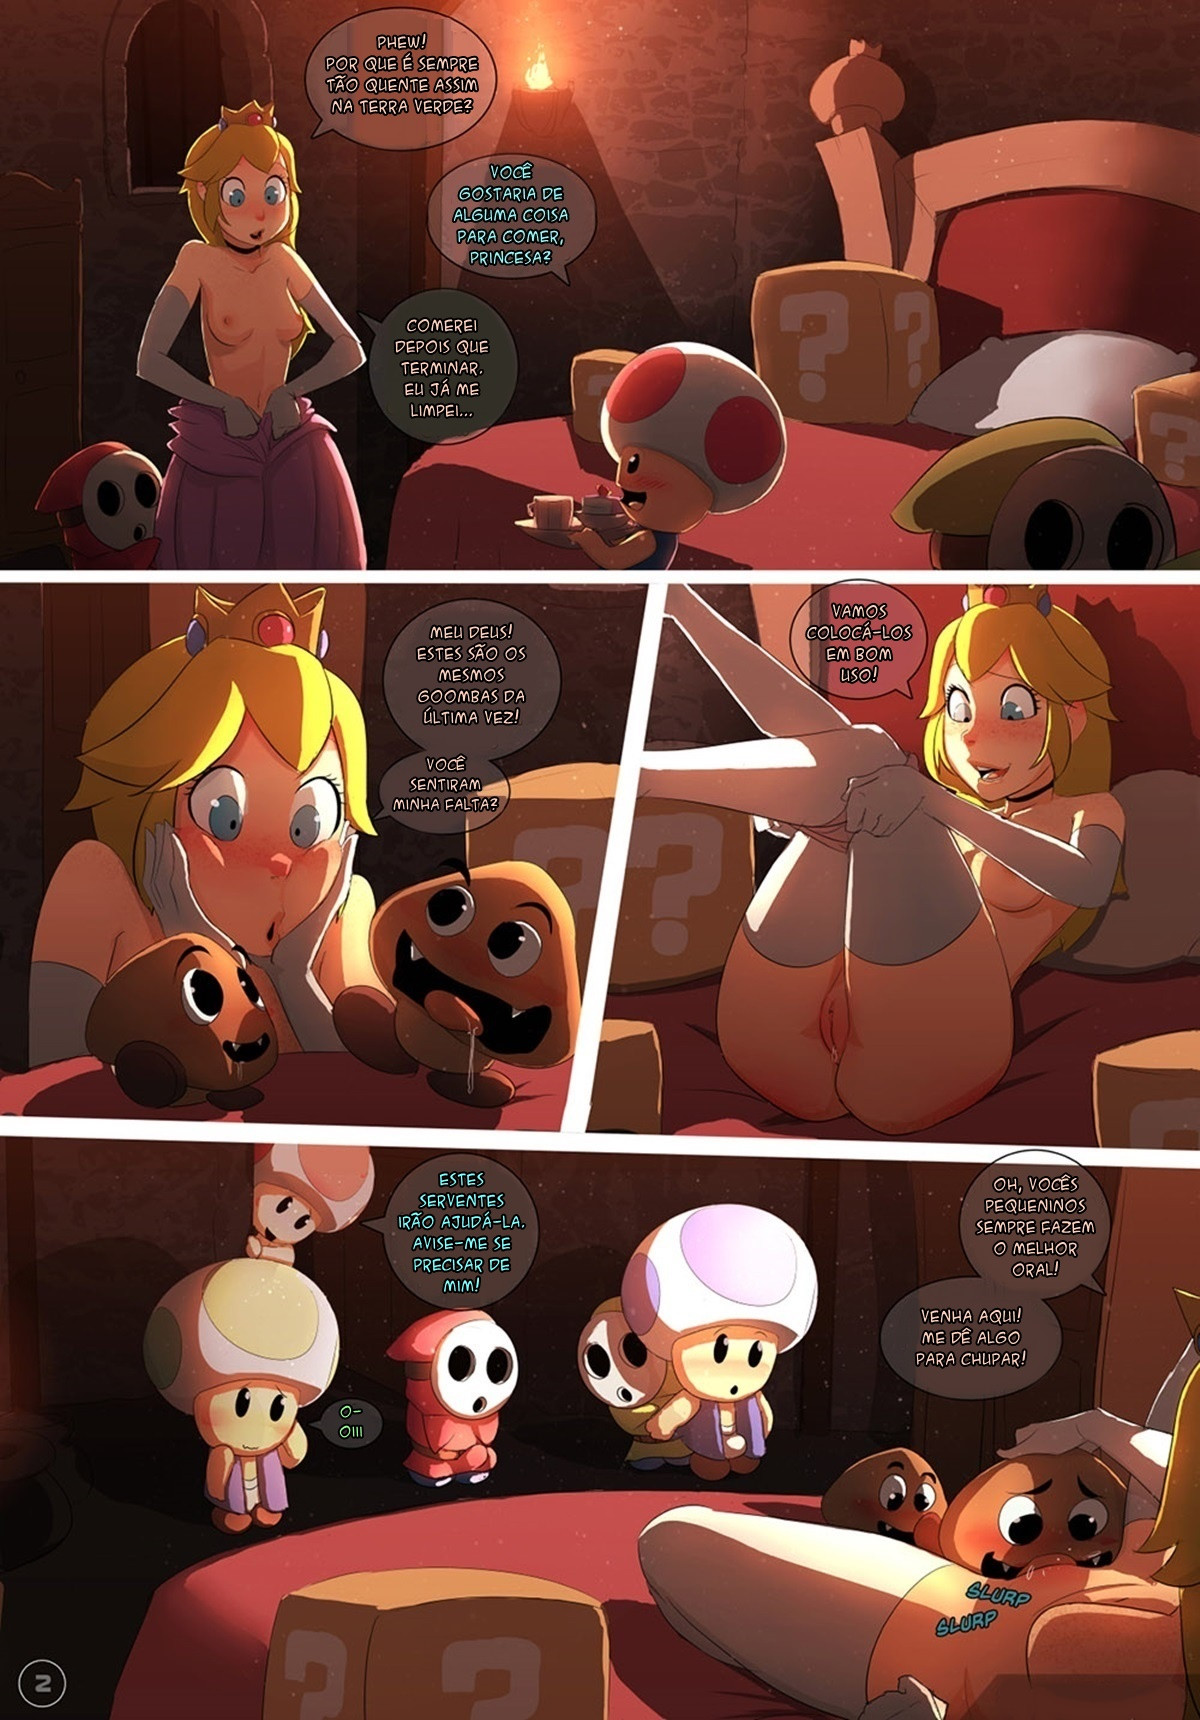 1200px x 1720px - Desenhos porno em quadrinhos: Super Mario Bros e a Princesa ...